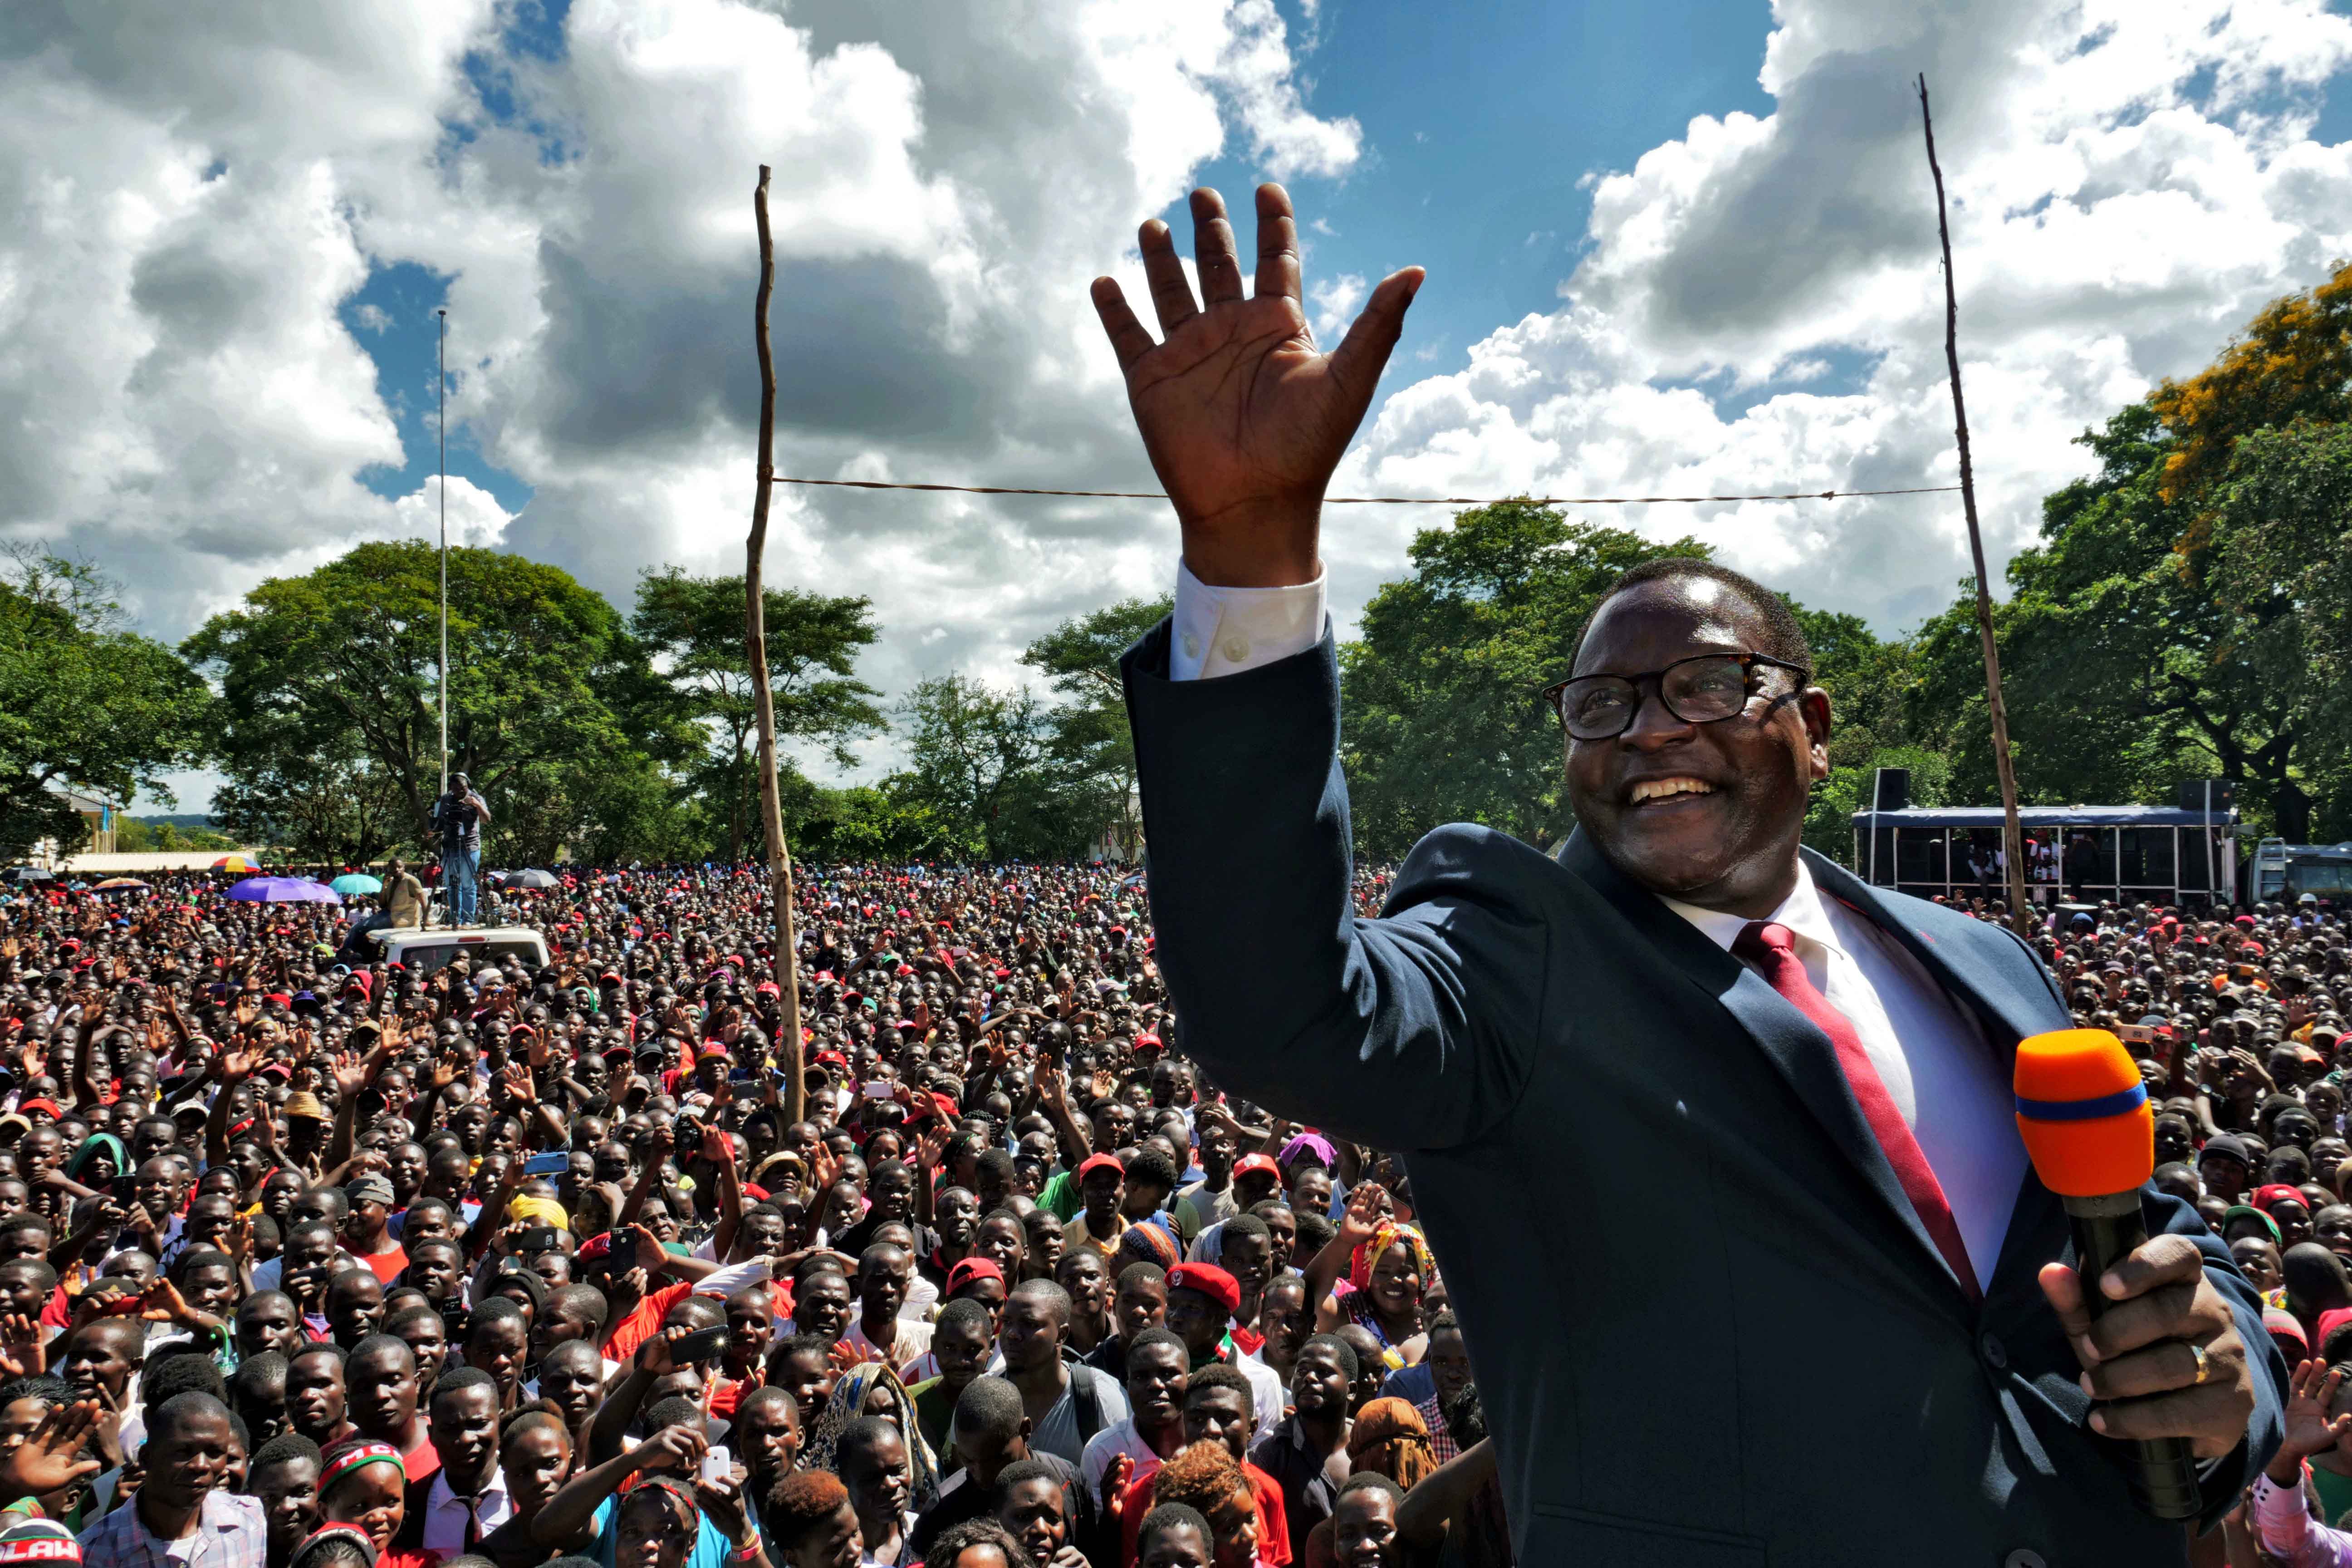 Le 4 février 2020 à Lilongwe au Malawi, Lazarus Chakwera, dirigeant du parti d’opposition MCP, exprimait sa joie devant ses partisans peu après la décision de la Cour constitutionnelle d’annuler les résultats de l’élection présidentielle de mai 2019. La Cour avait jugé que ce scrutin, lors duquel le président Peter Mutharika avait été réélu a une courte majorité, était entaché d’irrégularités, et ordonné la tenue d’une nouvelle élection.